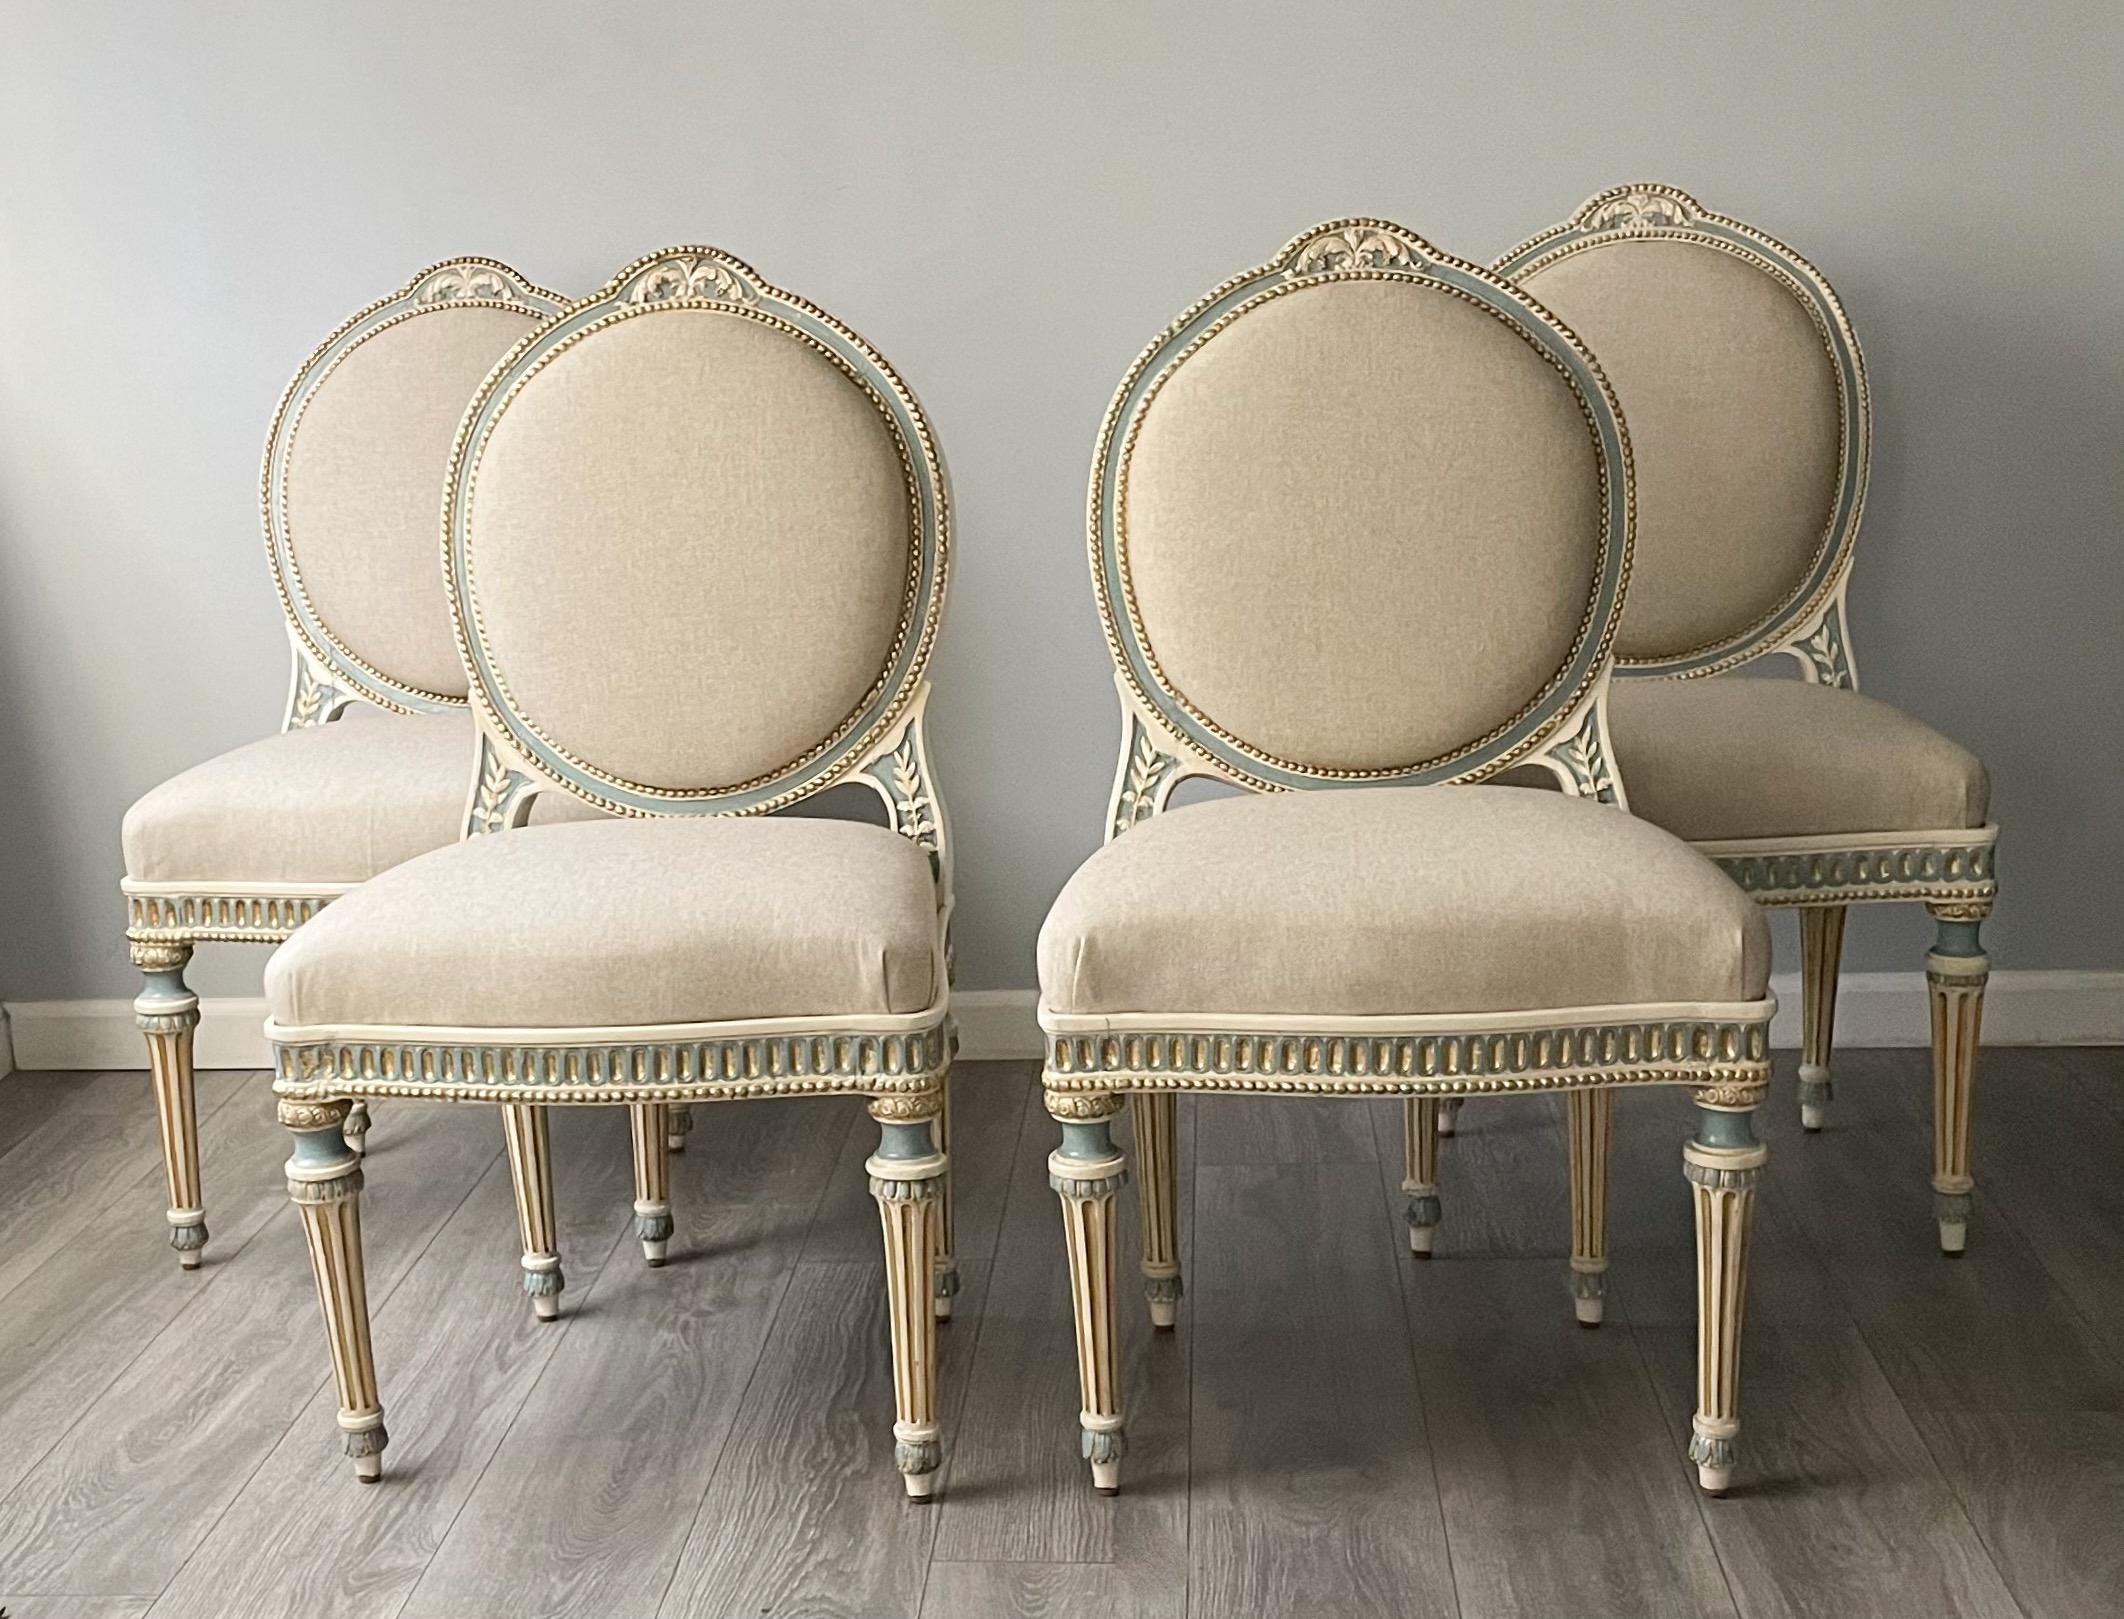 Wunderschöner französischer Satz von 4 bemalten und paketvergoldeten Esszimmerstühlen im Stil Louis XVI. aus dem 19.

Die Stühle sind mit detaillierten geschnitzten und gemalten Verzierungen versehen und mit neuem Baumwollleinen gepolstert.